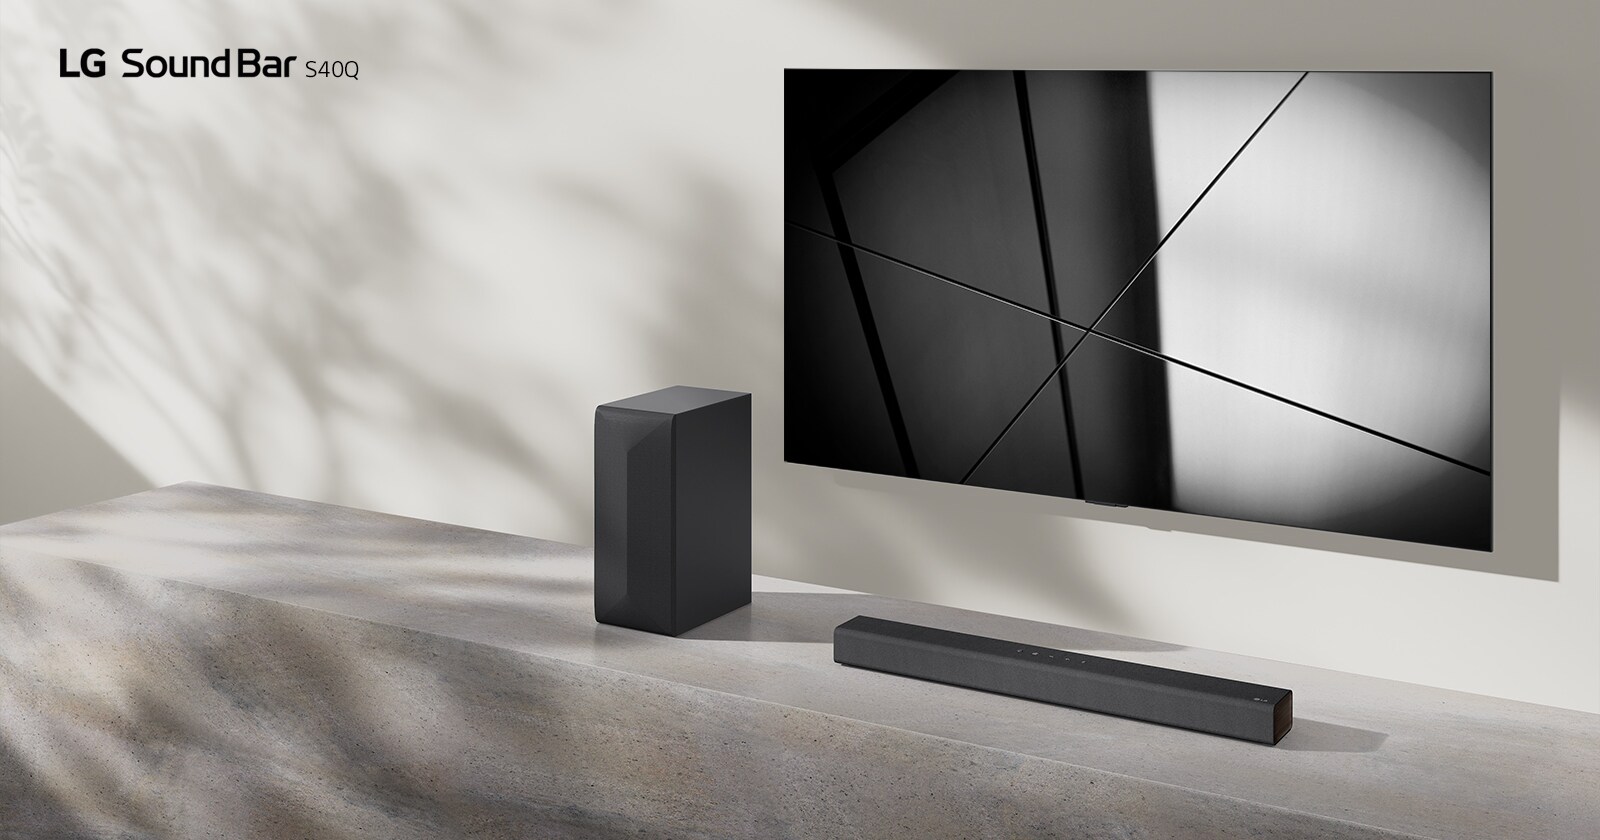 LG Soundbar S40Q og LG TV er placeret sammen i stuen. TV'et er tændt og viser et geometrisk billede.